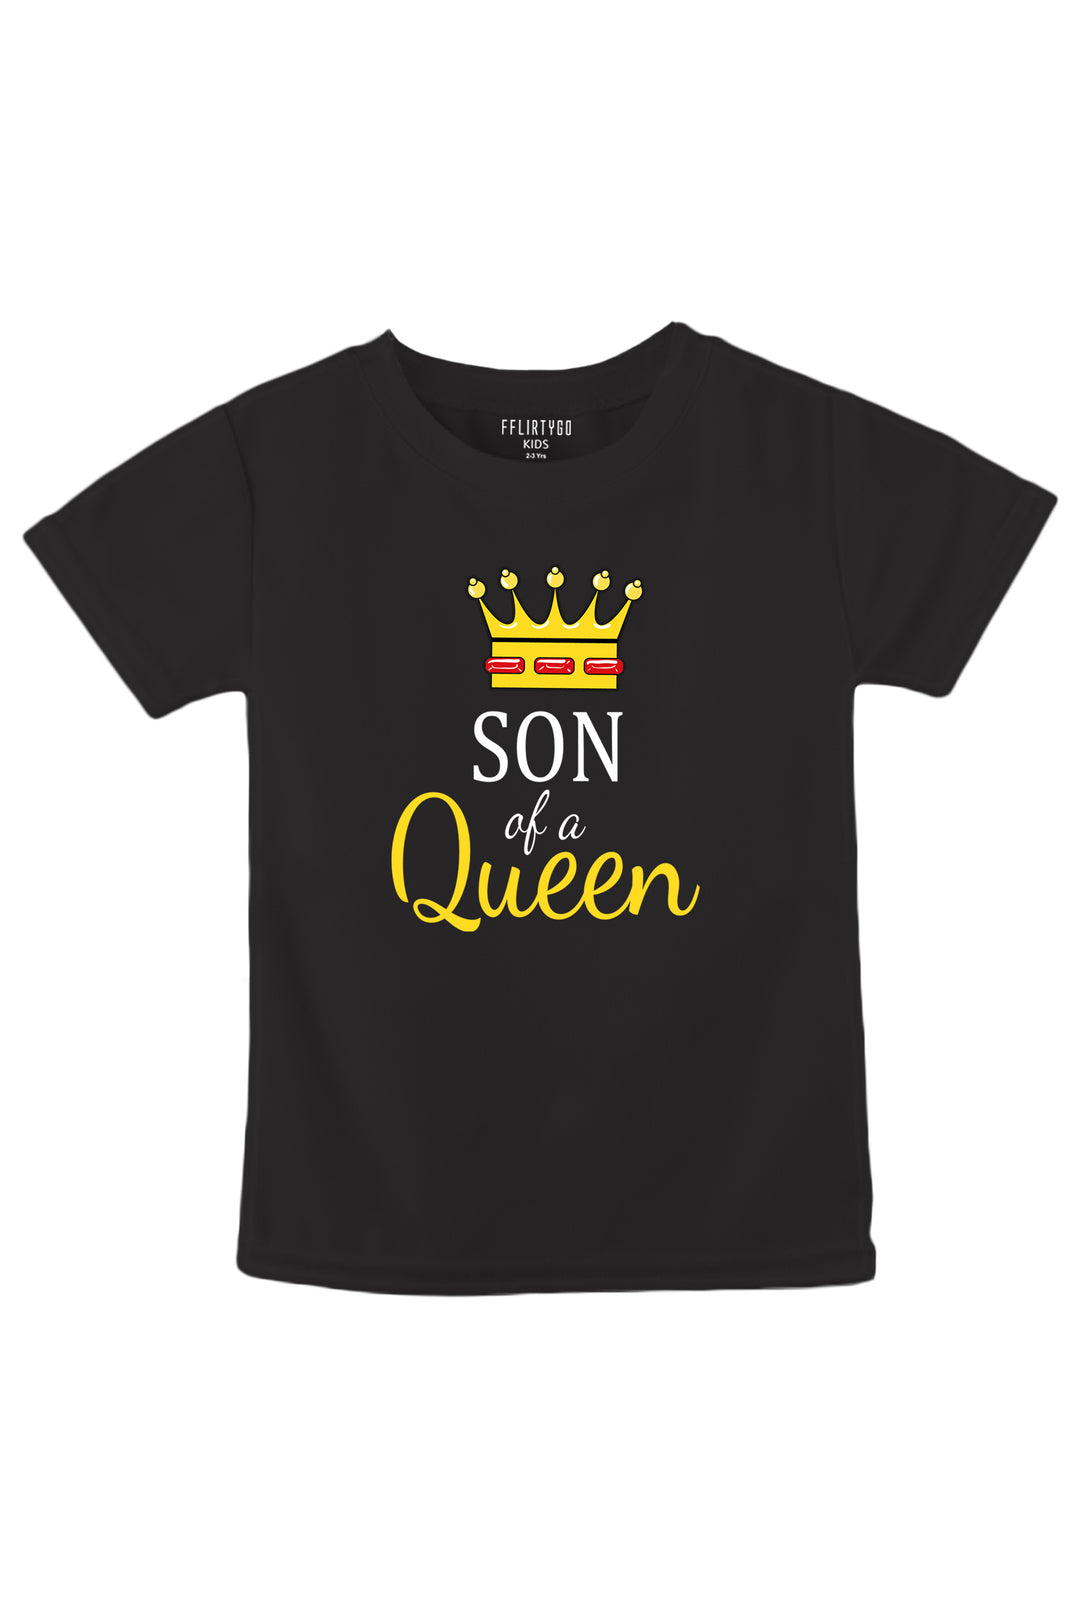 Son Of a Queen